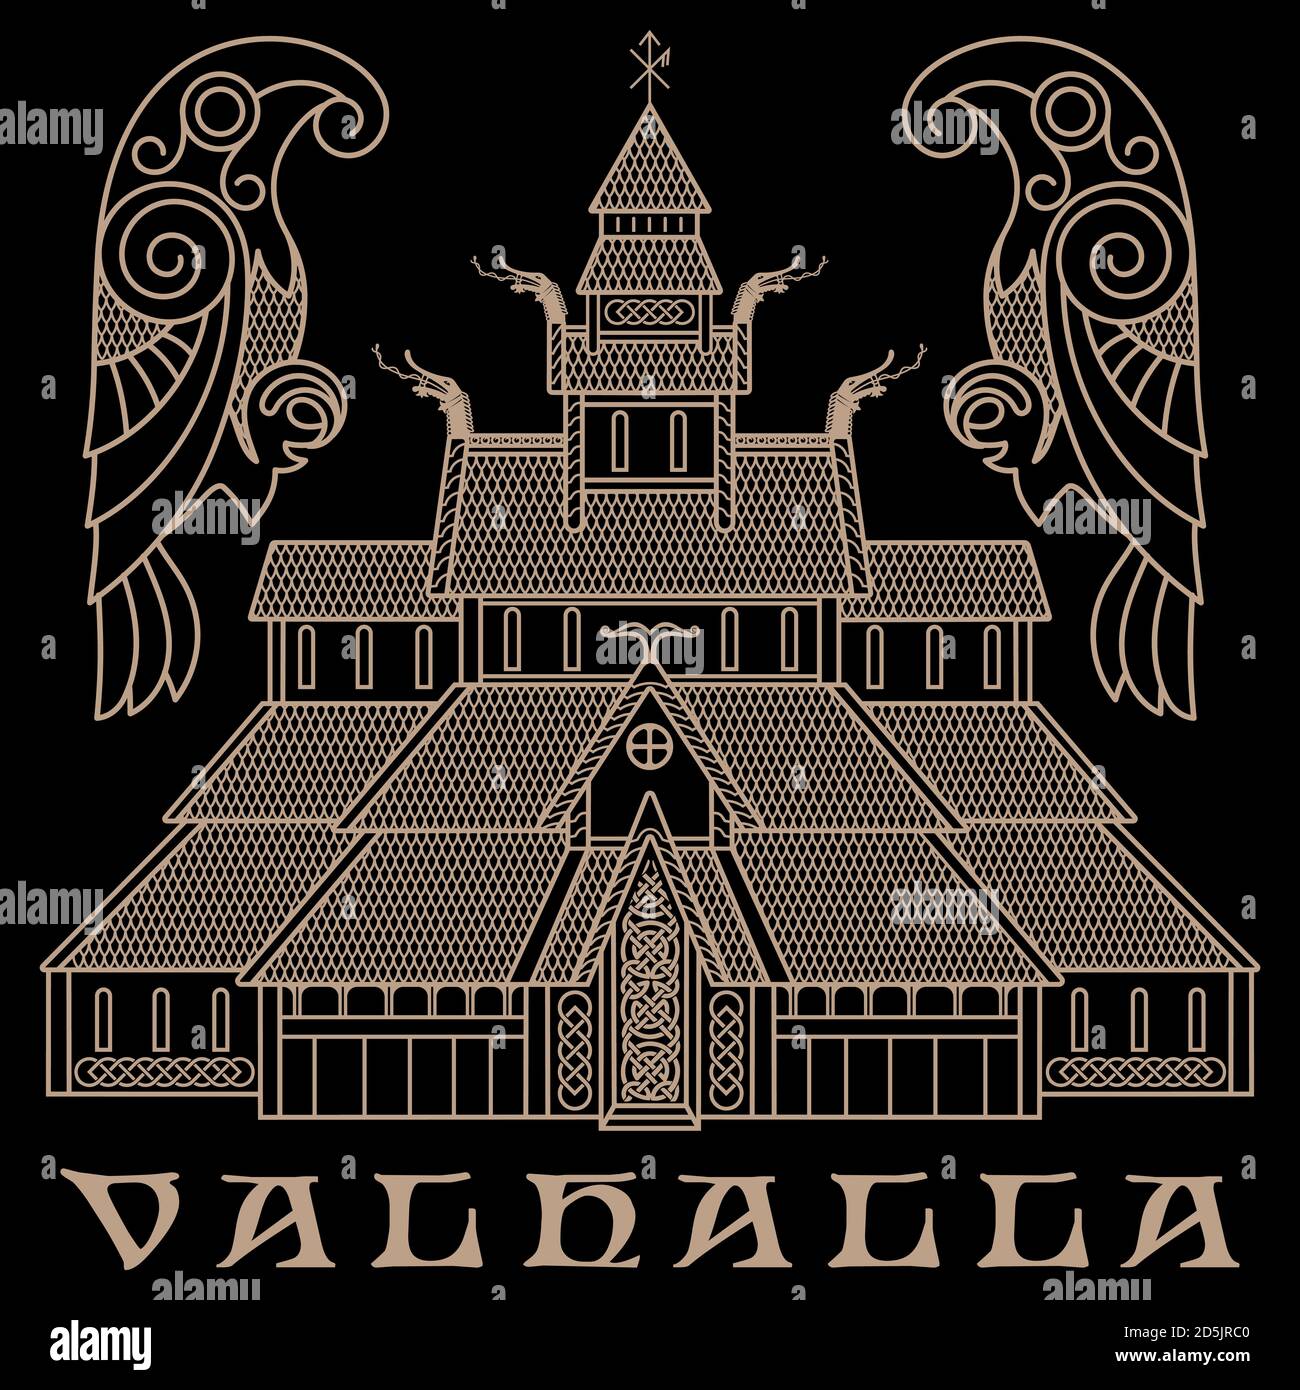 Alter Tempel des nordischen Gottes Odin - Valaskjalf, Odins Hallen und zwei Krähen Huginn und Muninn Stock Vektor